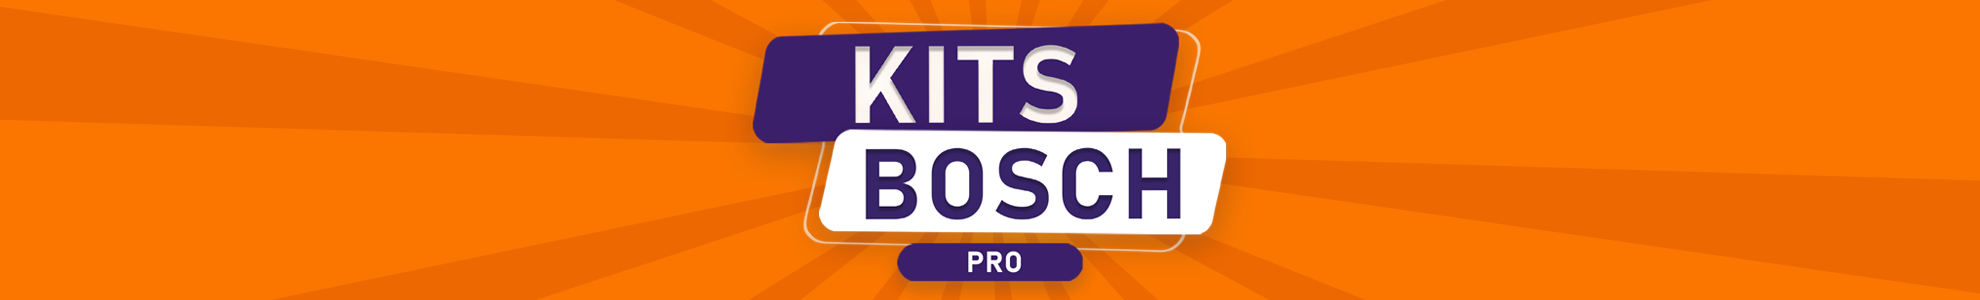 Kits Bosch Pro